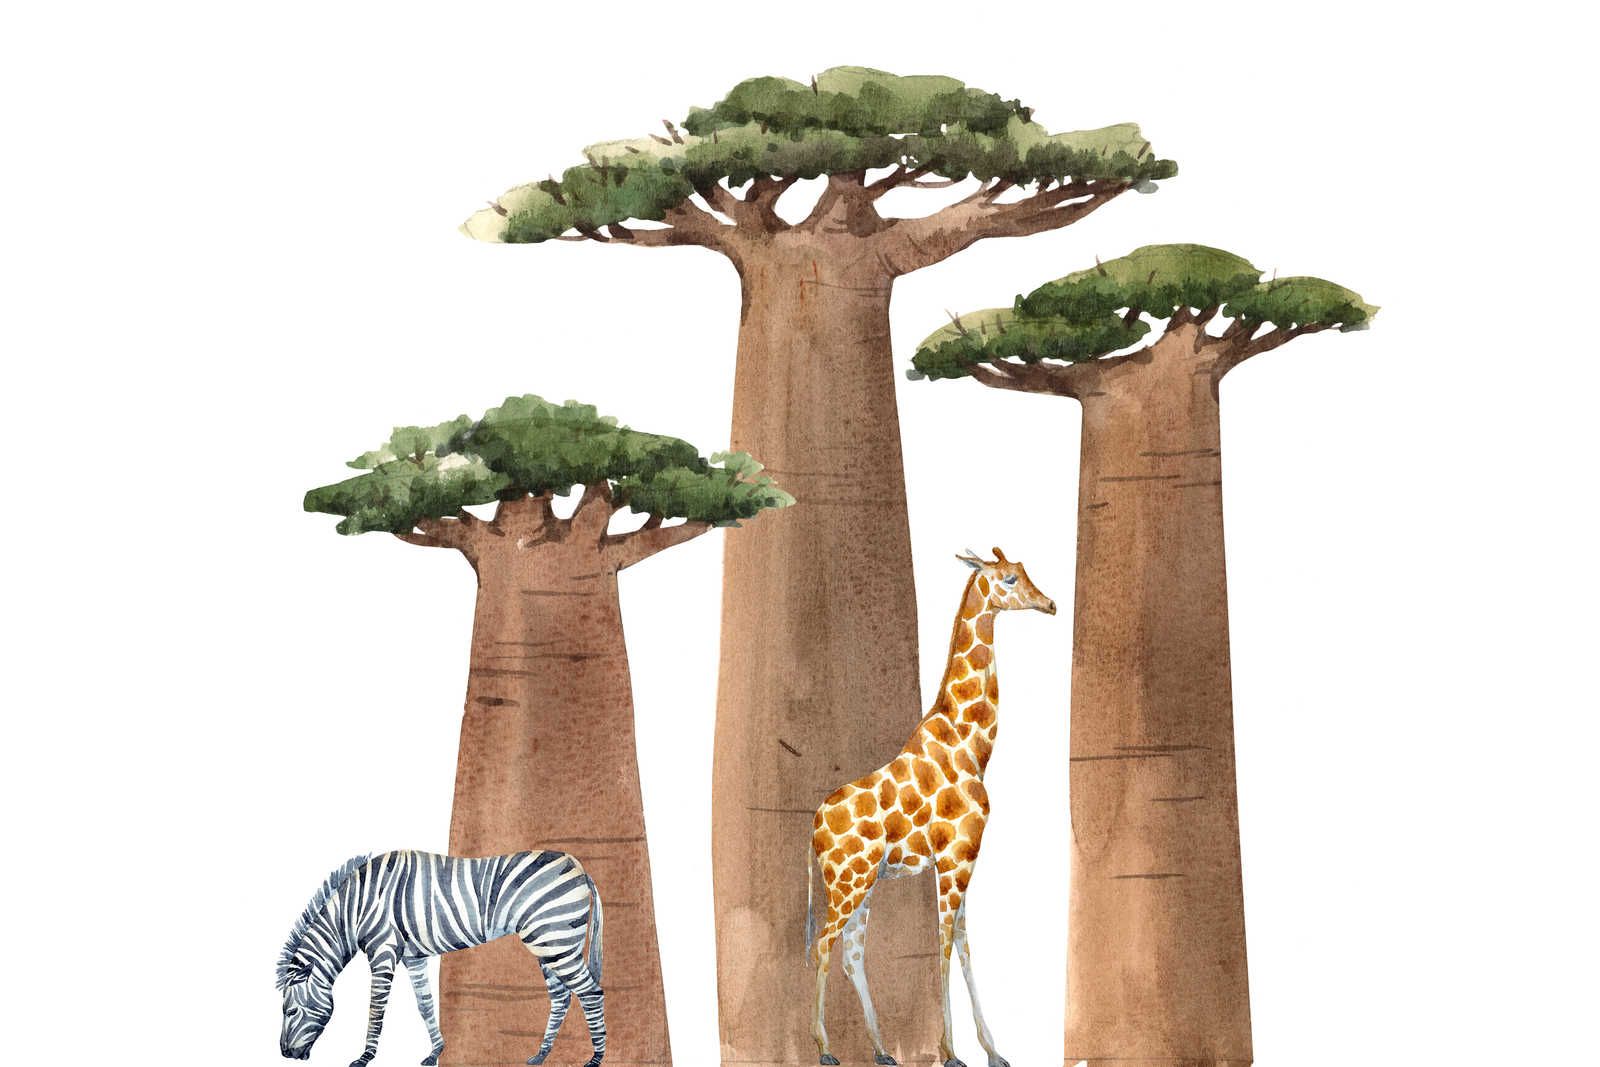             Leinwand Savanne mit Giraffe und Zebra – 90 cm x 60 cm
        